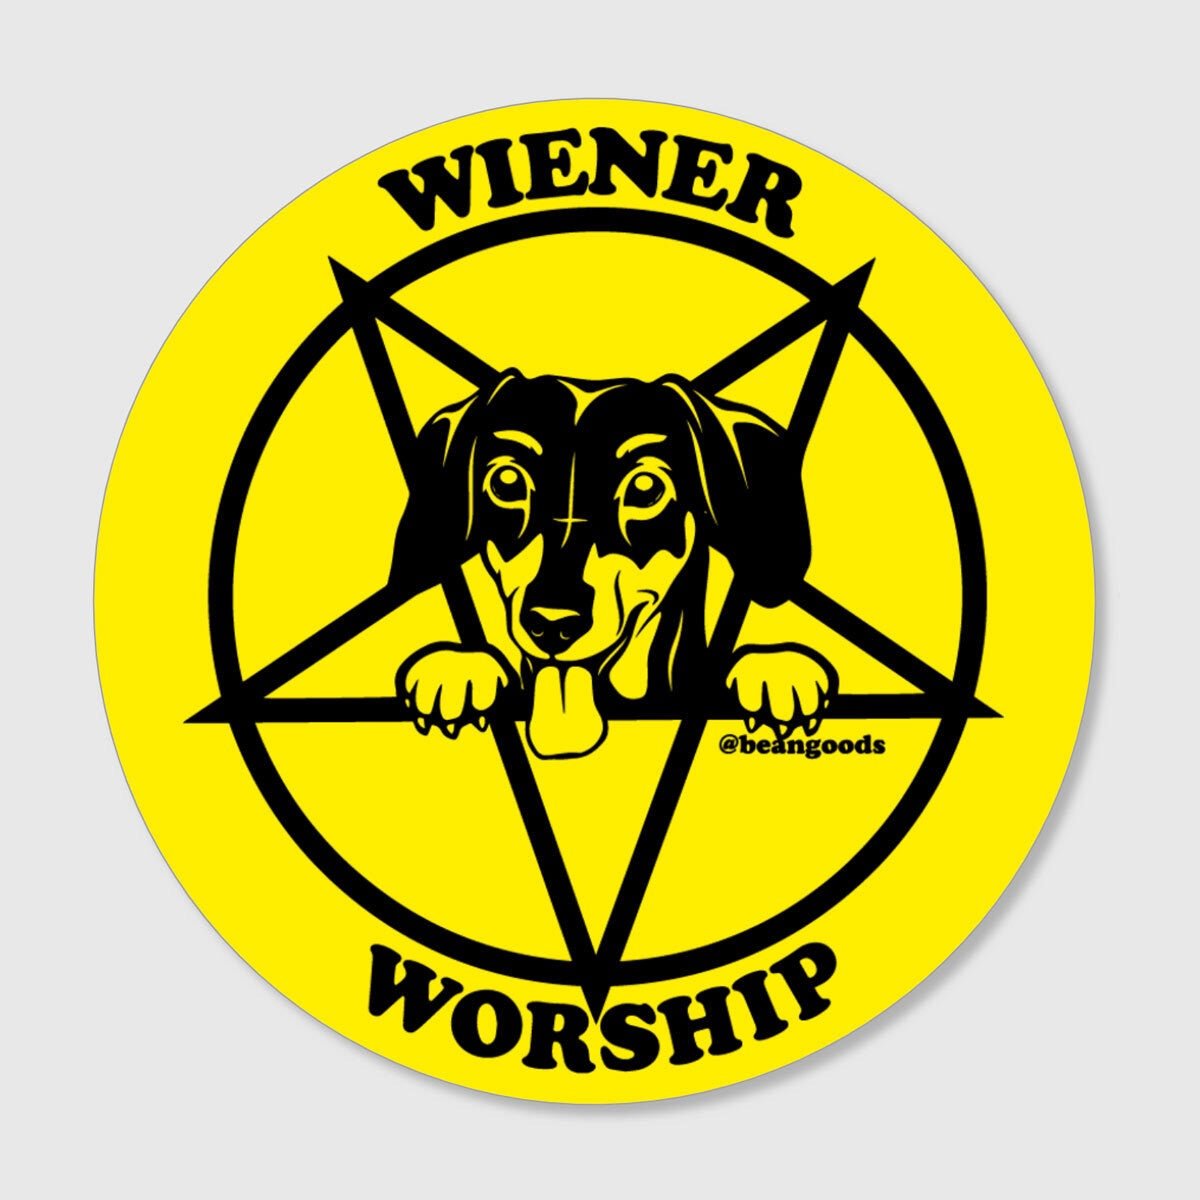 wiener worship sticker - bean goods